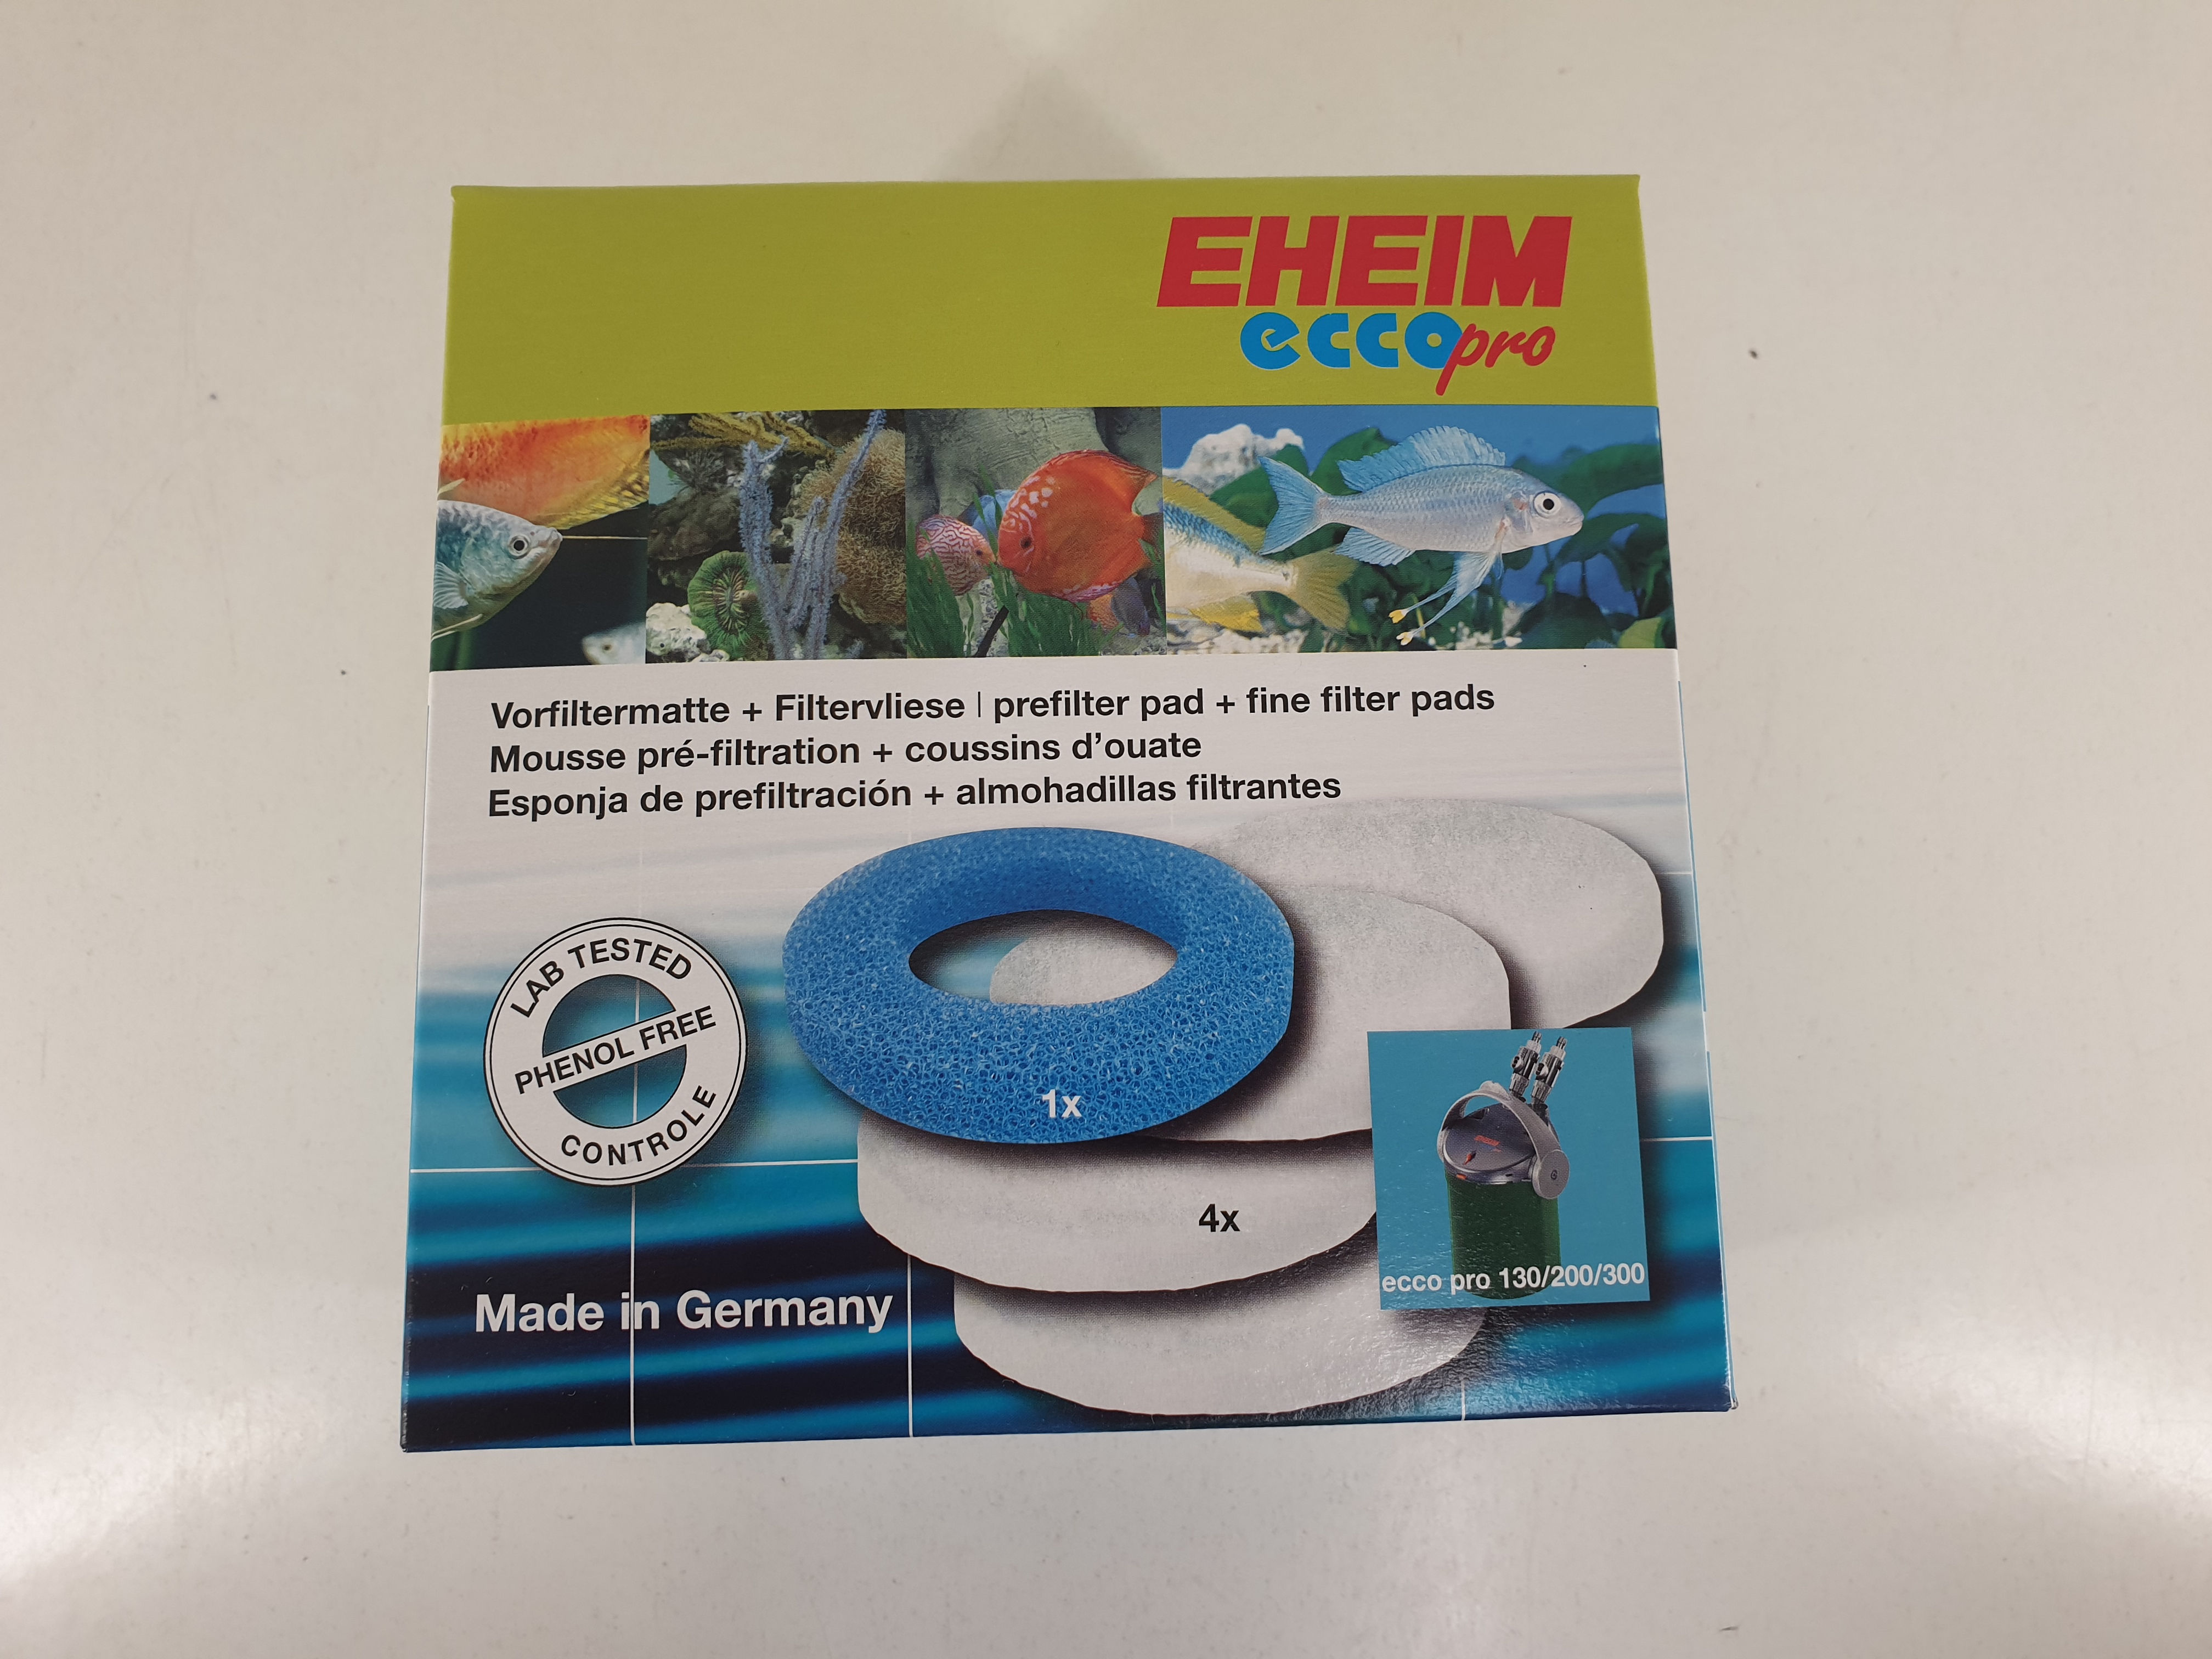 Eheim Ecco Pro 130-300 (2032-2036) 1x Vorfiltermatte + 4x Filtervlies [2616 320]